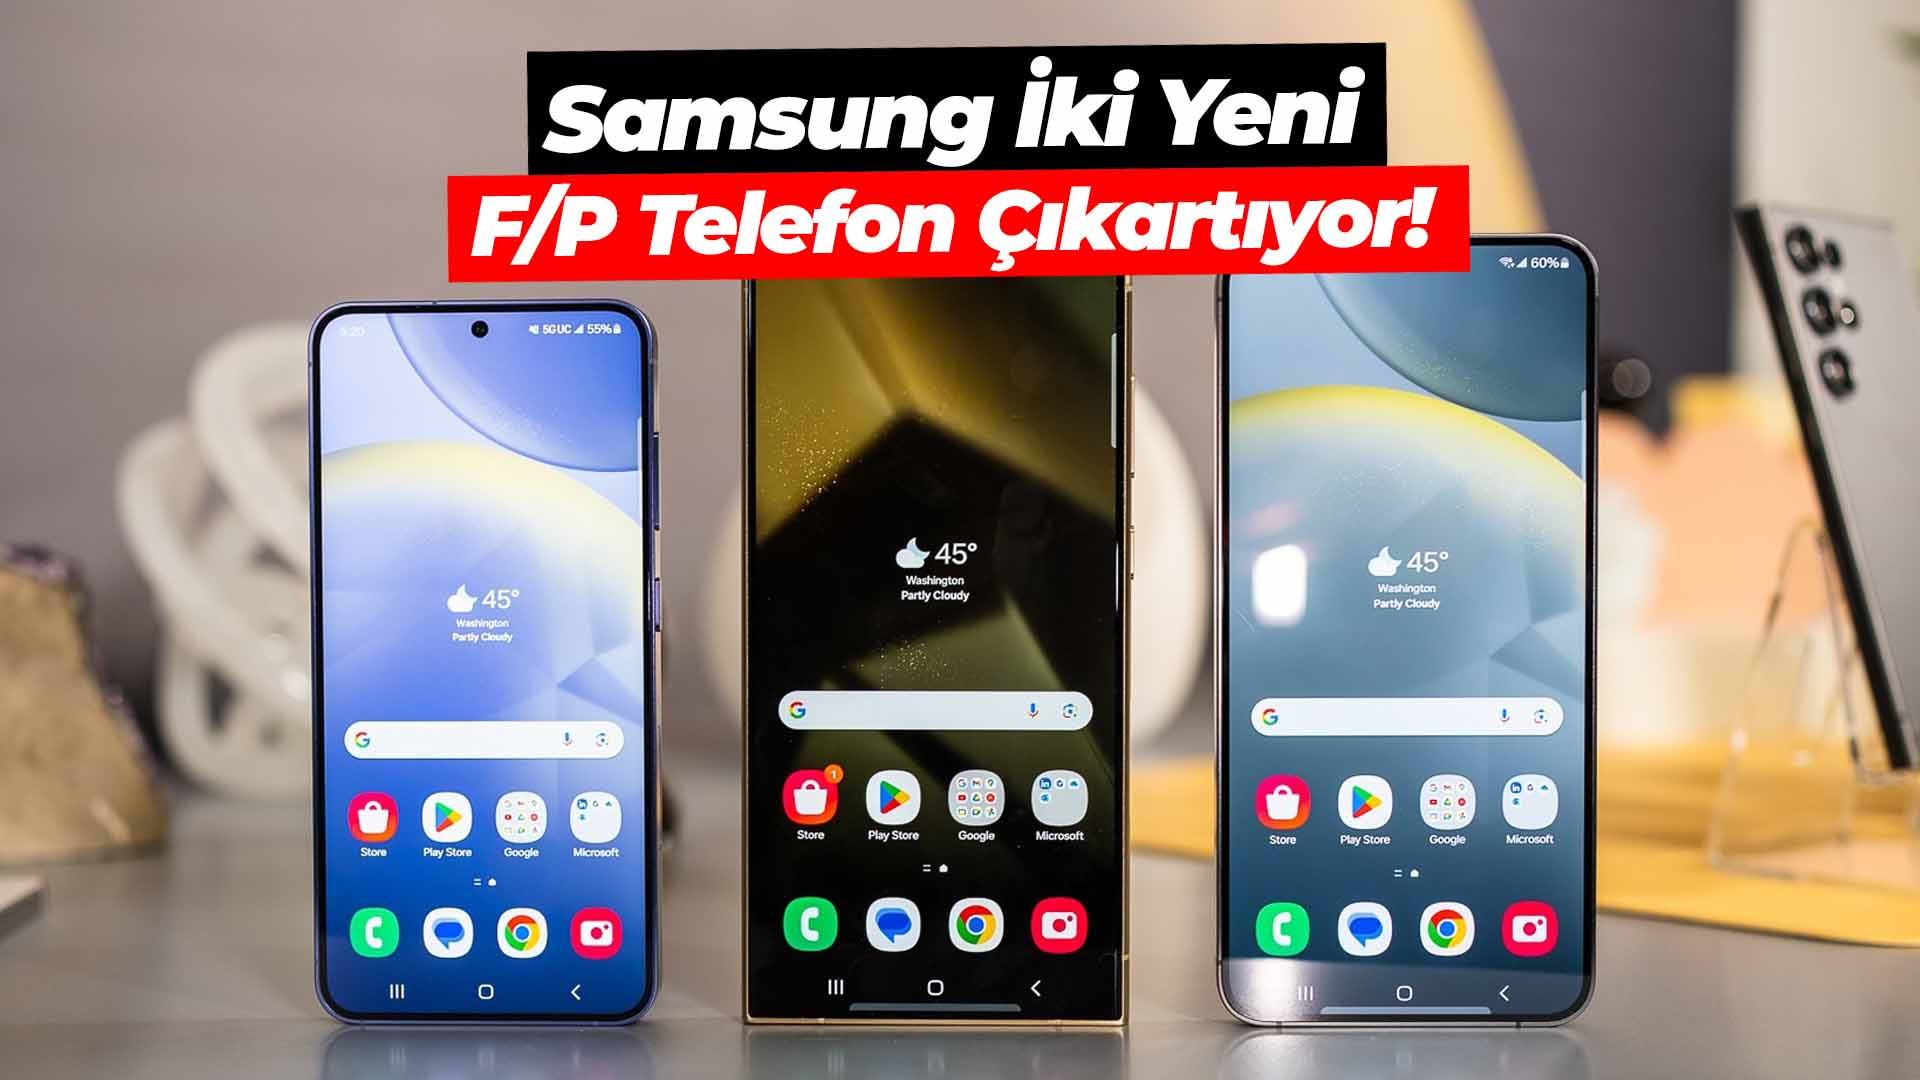 Samsung iki yeni F/P telefon çıkartıyor!